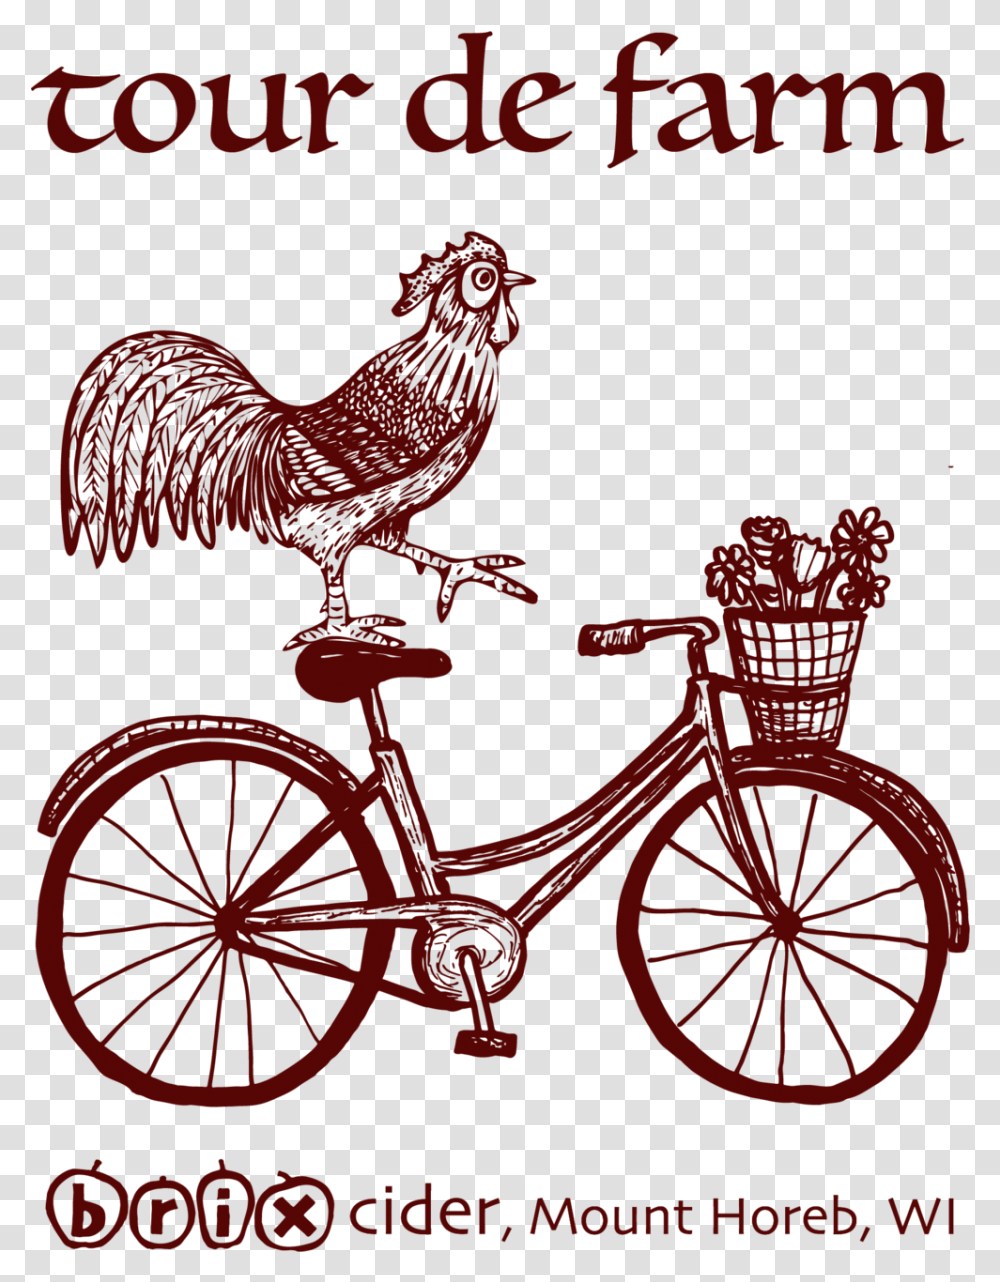 Tour De Farm Bicycle, Vehicle, Transportation, Bike, Wheel Transparent Png